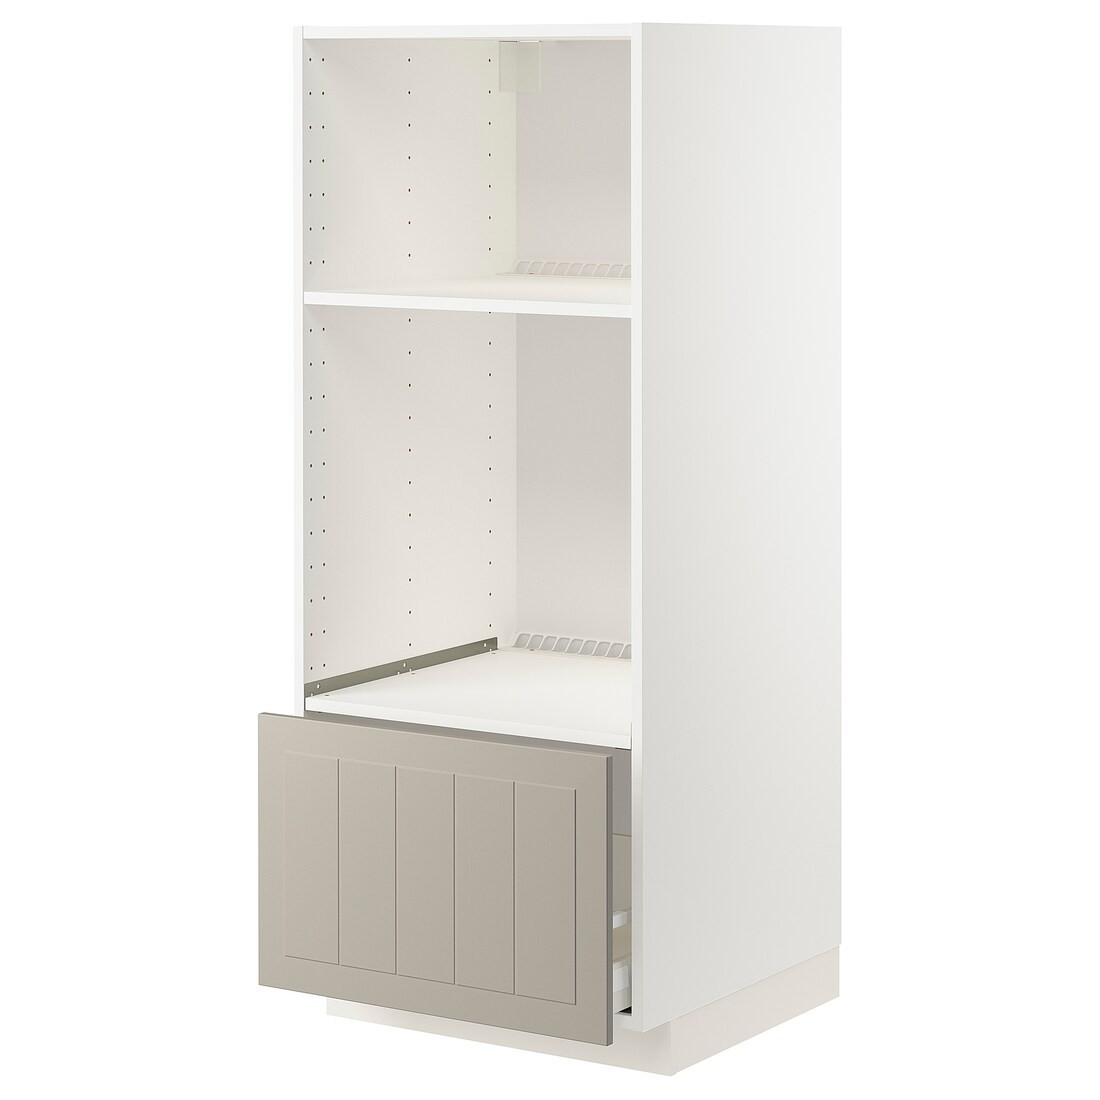 IKEA METOD МЕТОД / MAXIMERA МАКСИМЕРА Высокий шкаф для духовки / СВЧ, белый / Stensund бежевый, 60x60x140 см 39407923 394.079.23